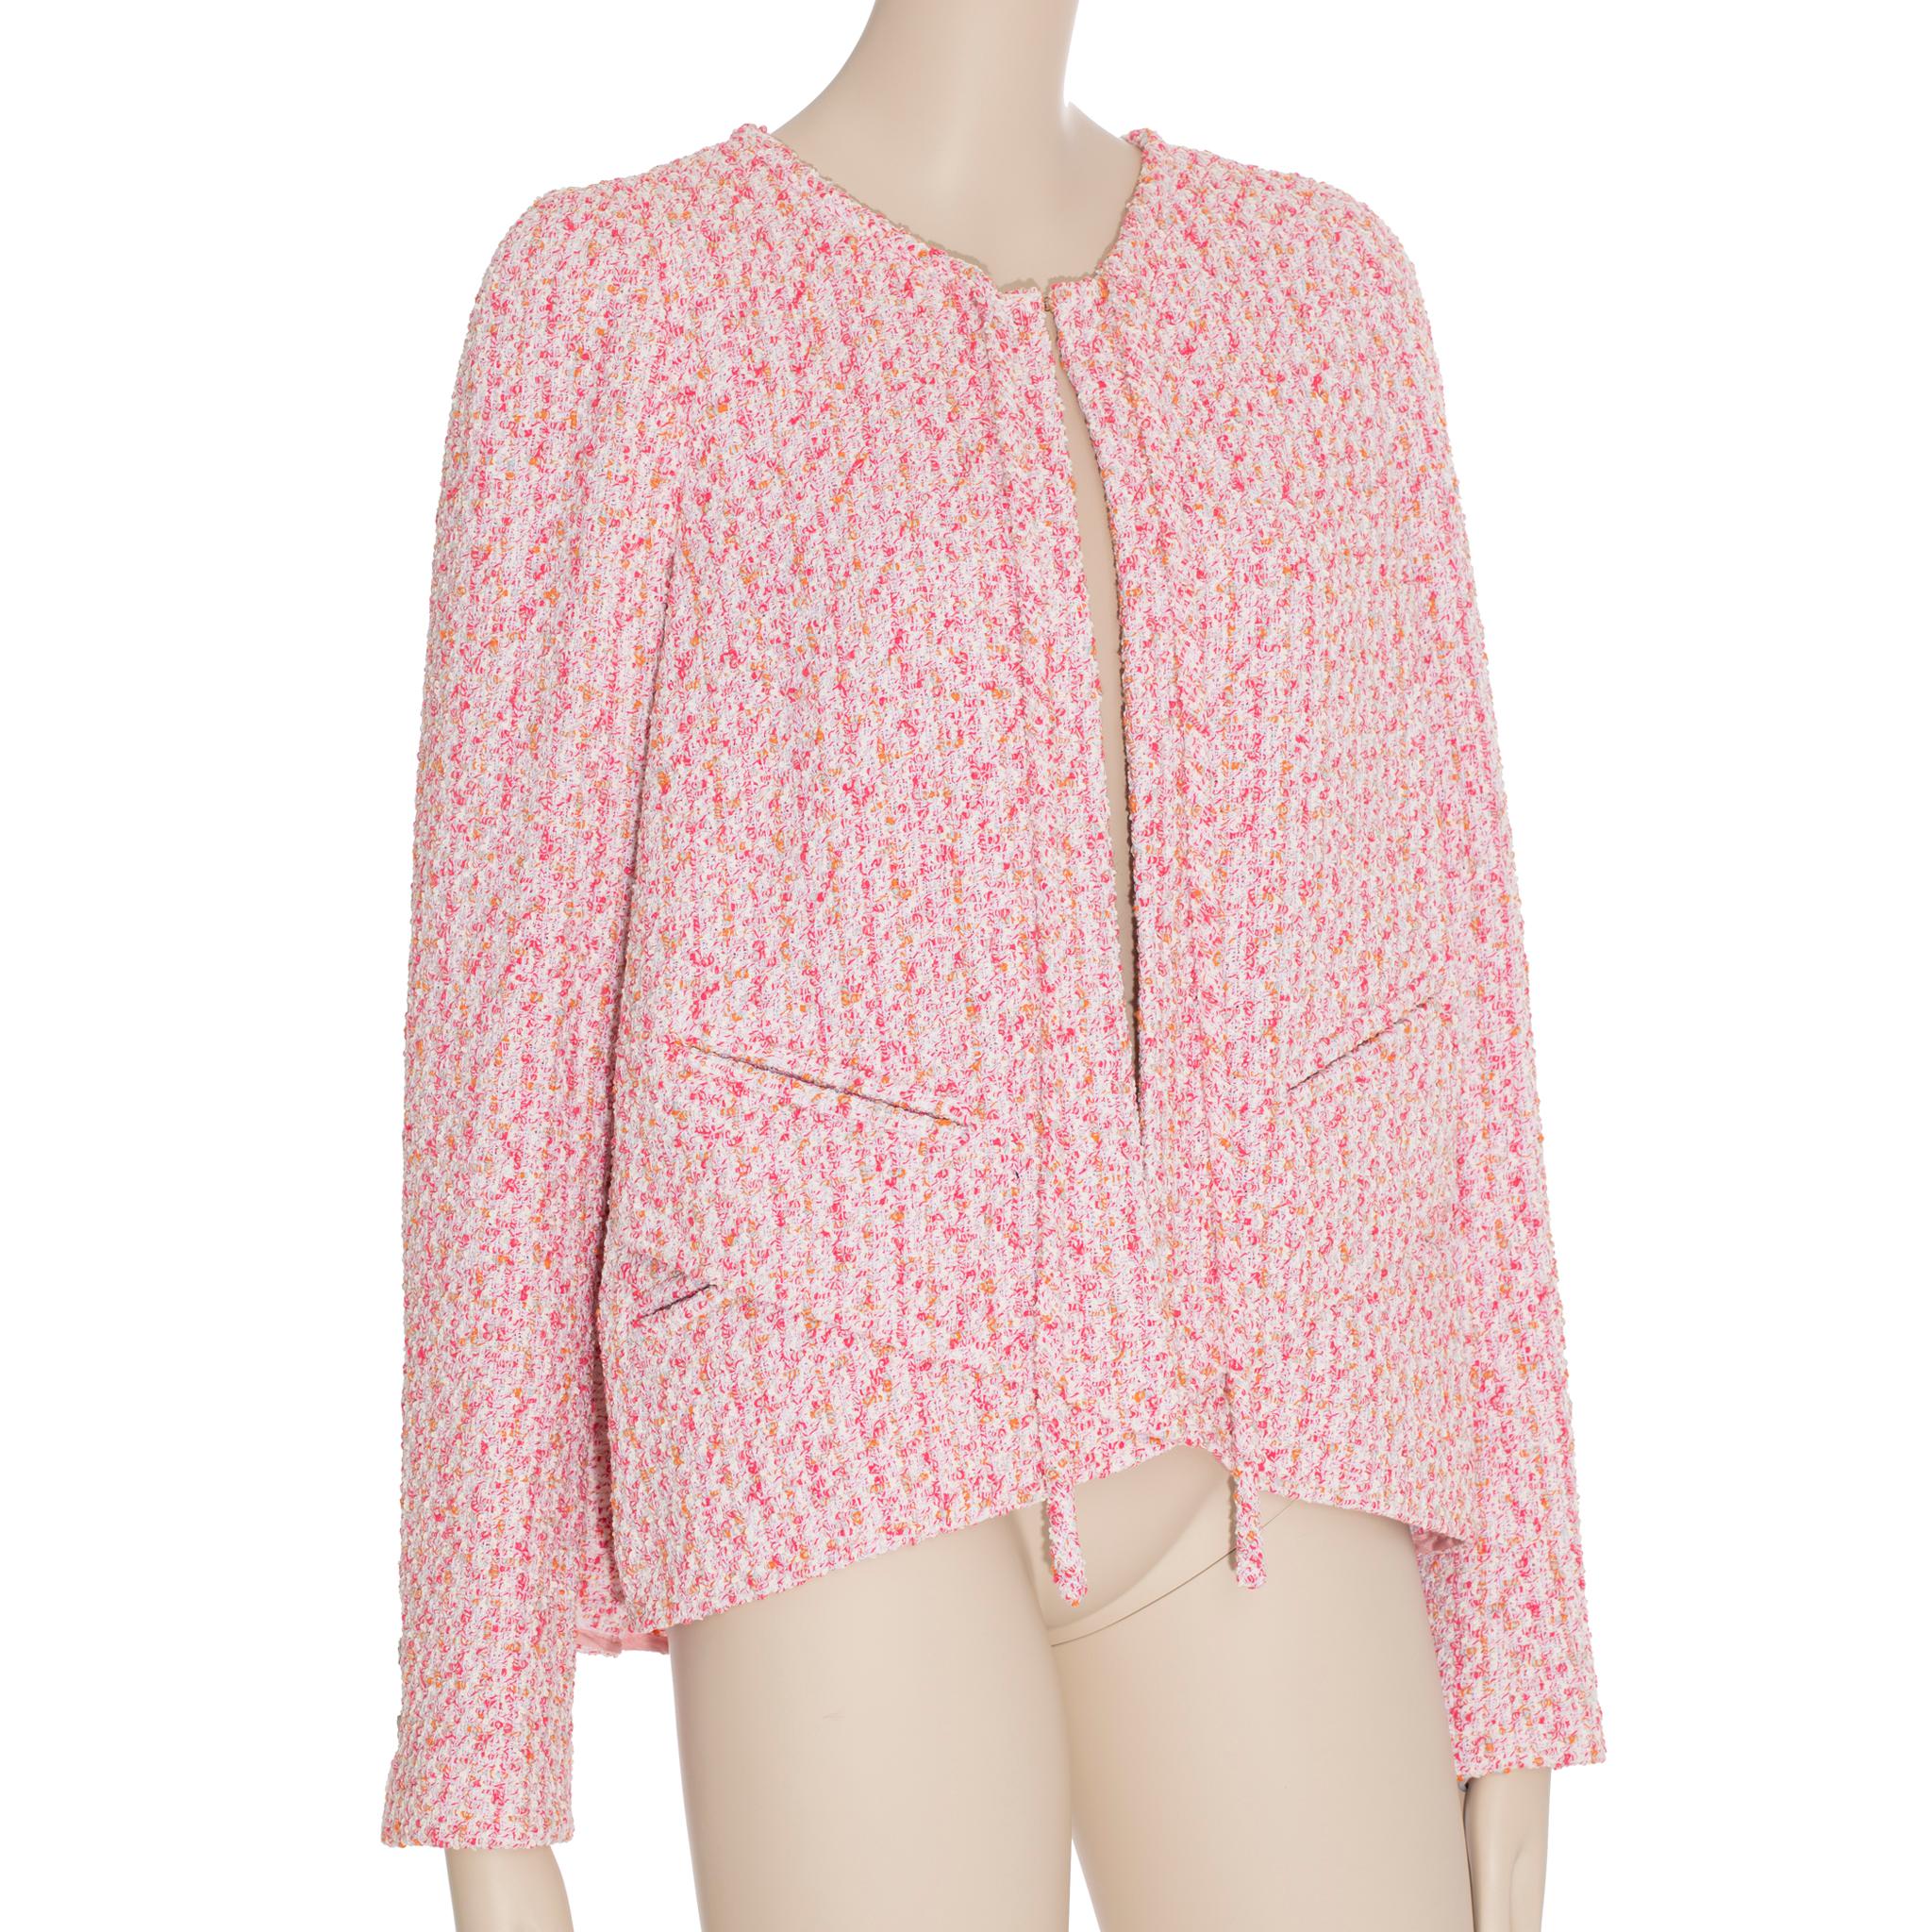 Cette cape/veste en tweed rose de Chanel est un ajout à la mode et à l'élégance de toute garde-robe. Doté d'un style cape raffiné, ce vêtement allie un design classique à une sophistication moderne. Parfait pour un dîner spécial ou une soirée, ce